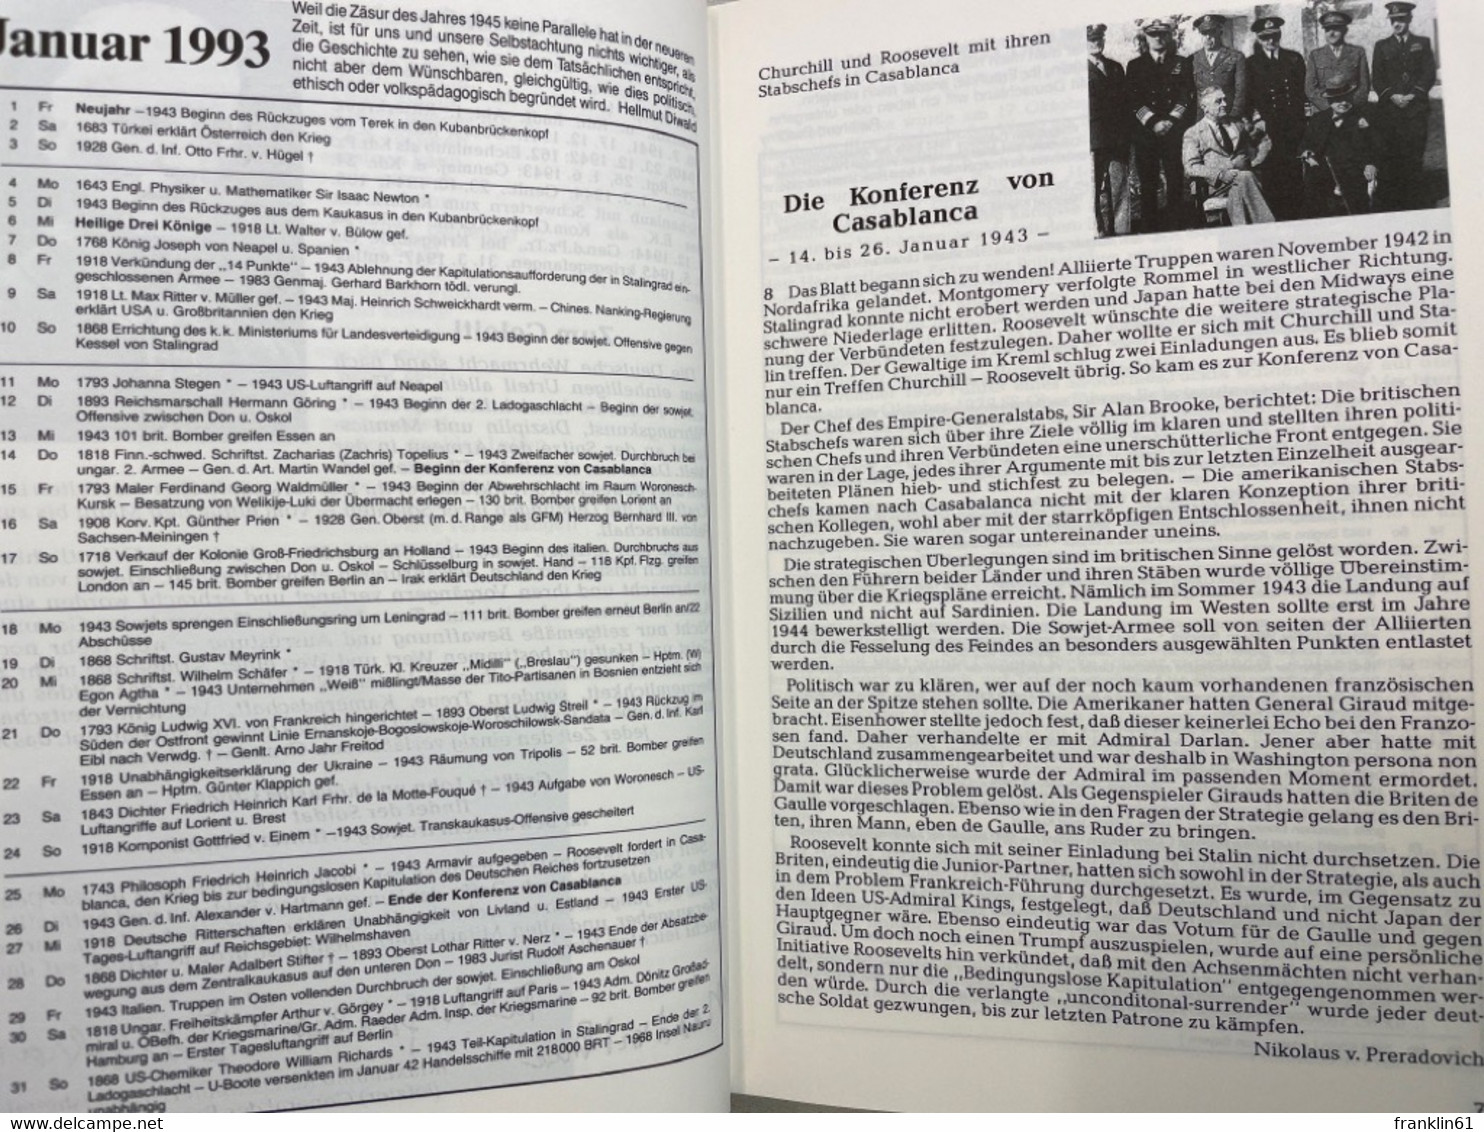 41. Deutscher Soldatenkalender 1993 - Militär & Polizei